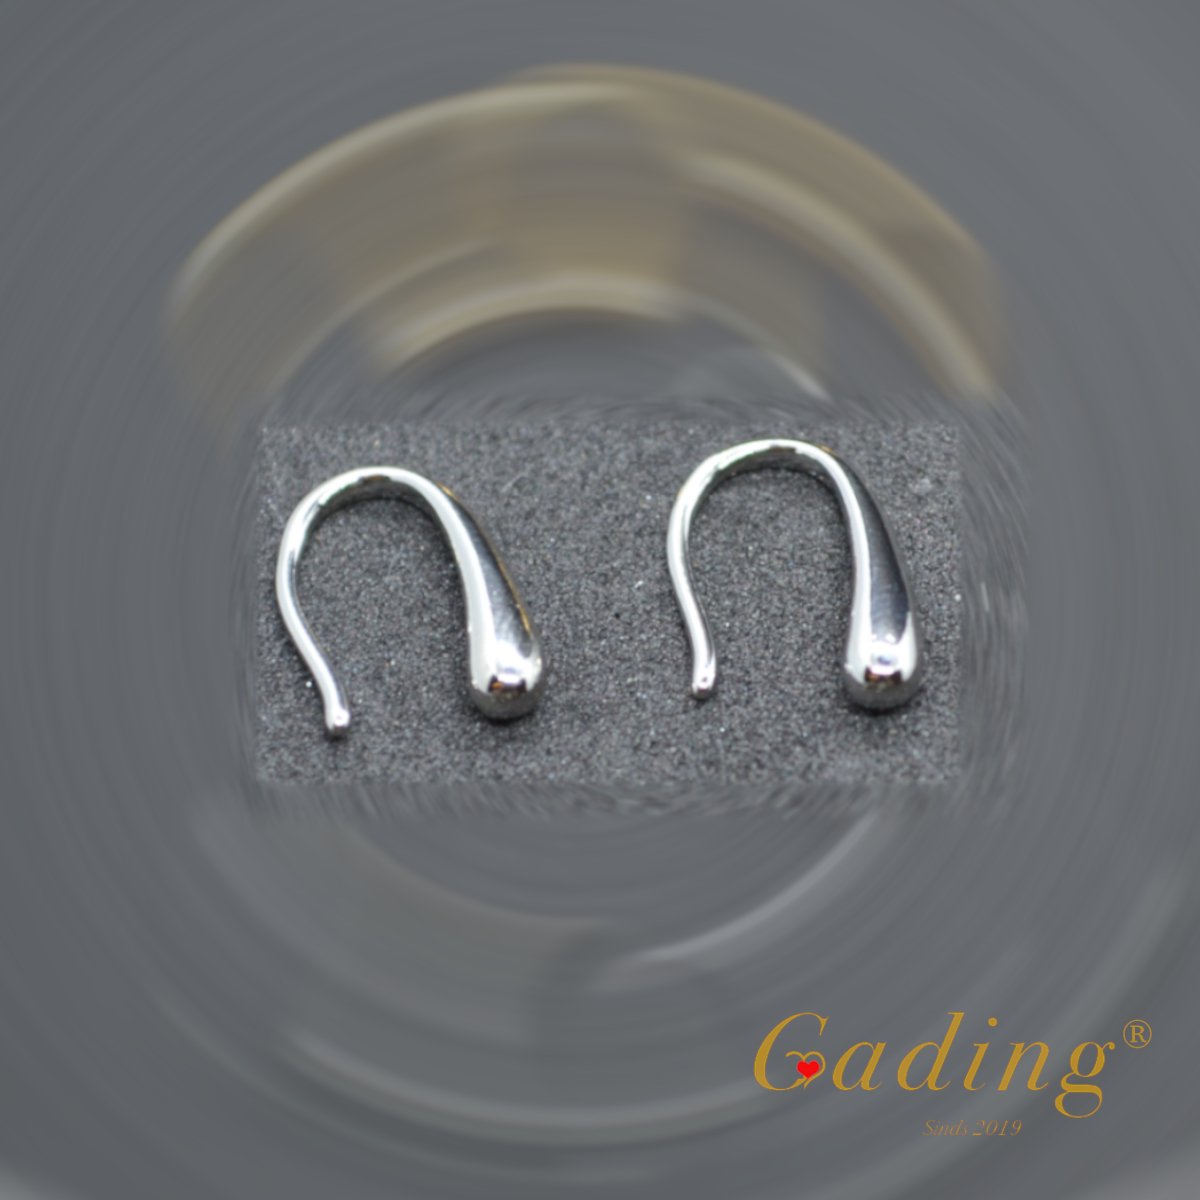 Gading® dames Oorbellen met zilver druppel vorm oorknoppen - 925 zilver